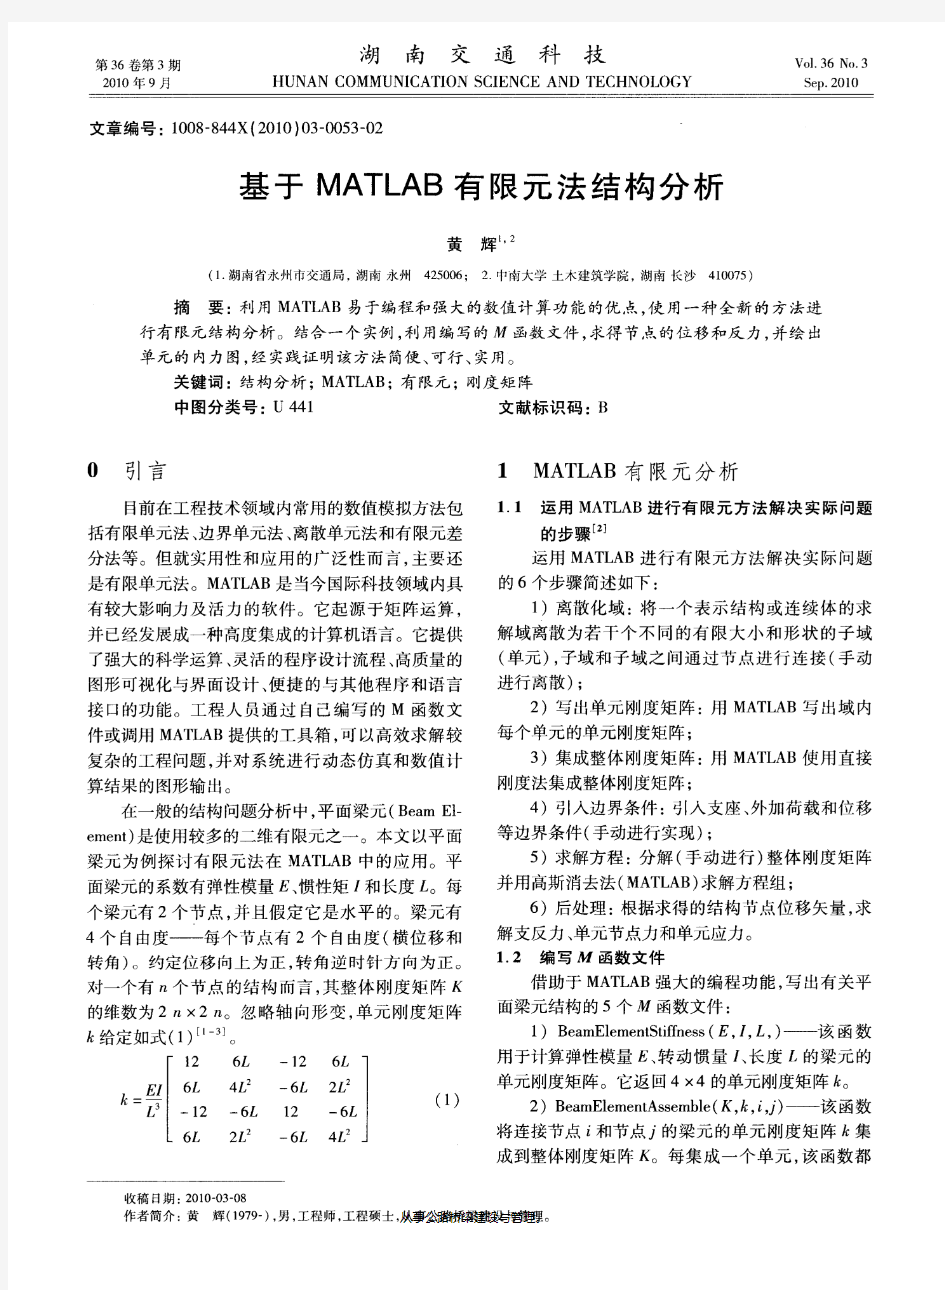 基于MATLAB有限元法结构分析